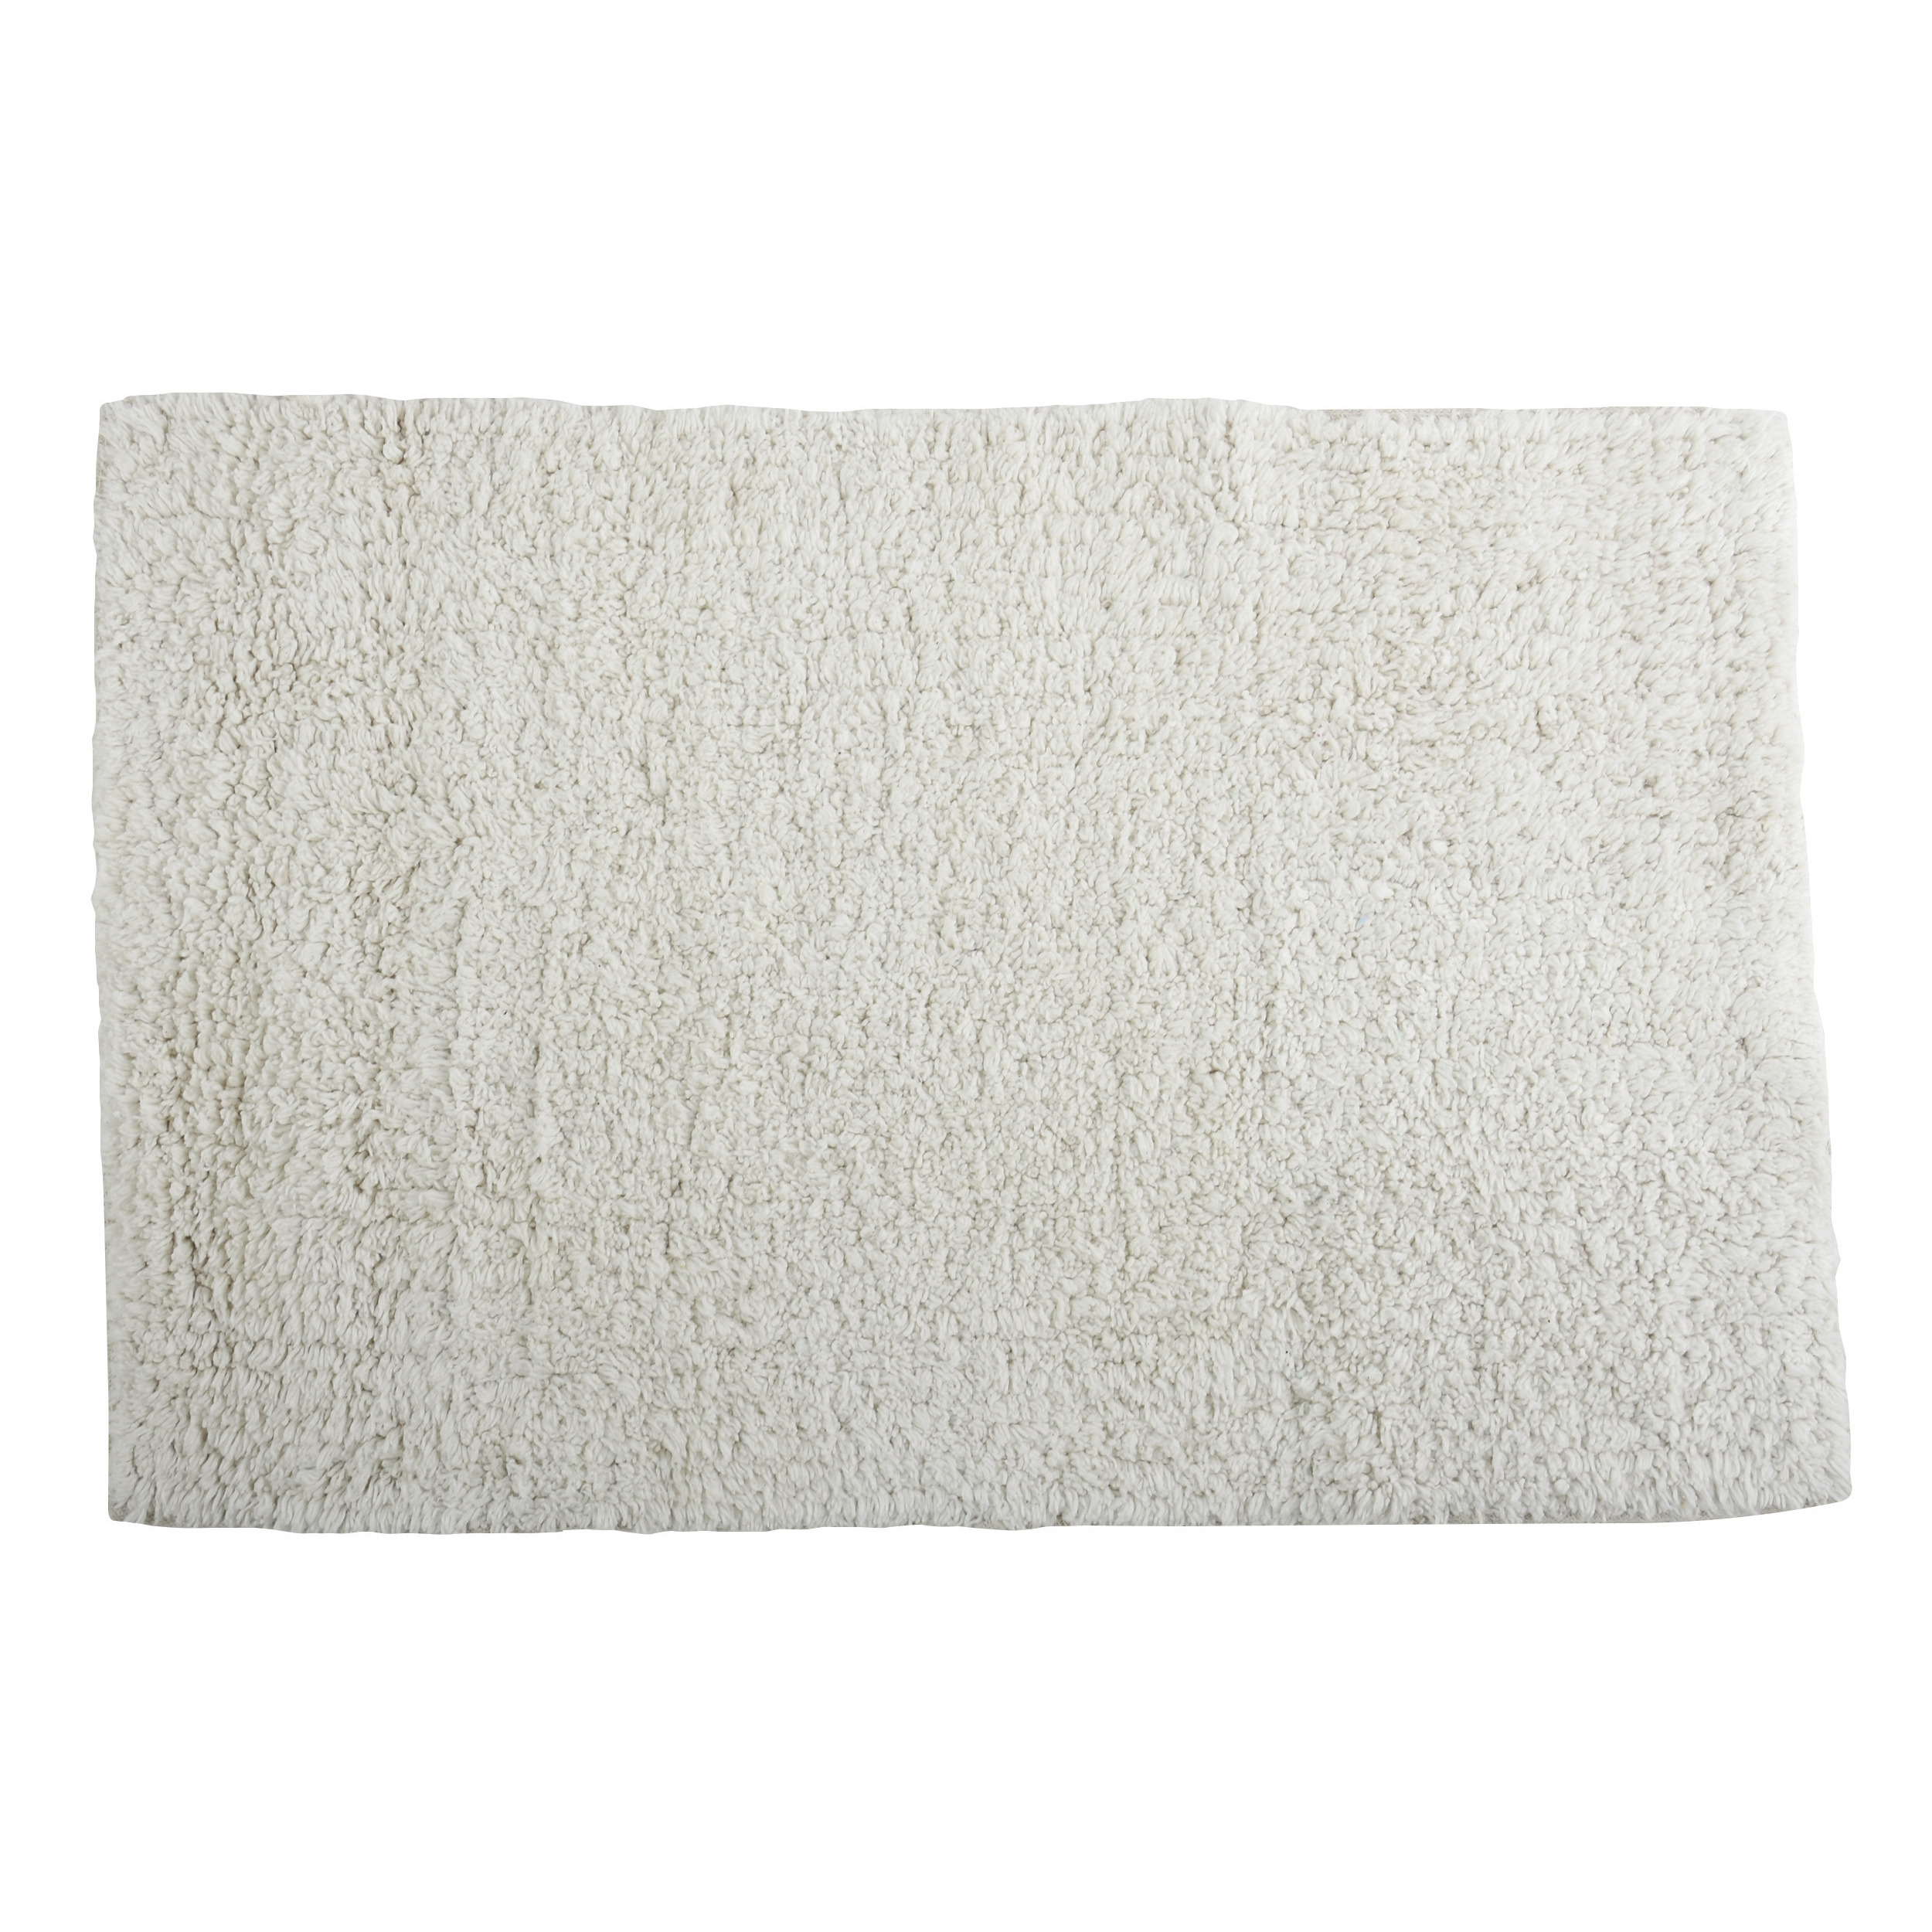 Badkamerkleedje-badmat tapijtje voor op de vloer ivoor wit 40 x 60 cm